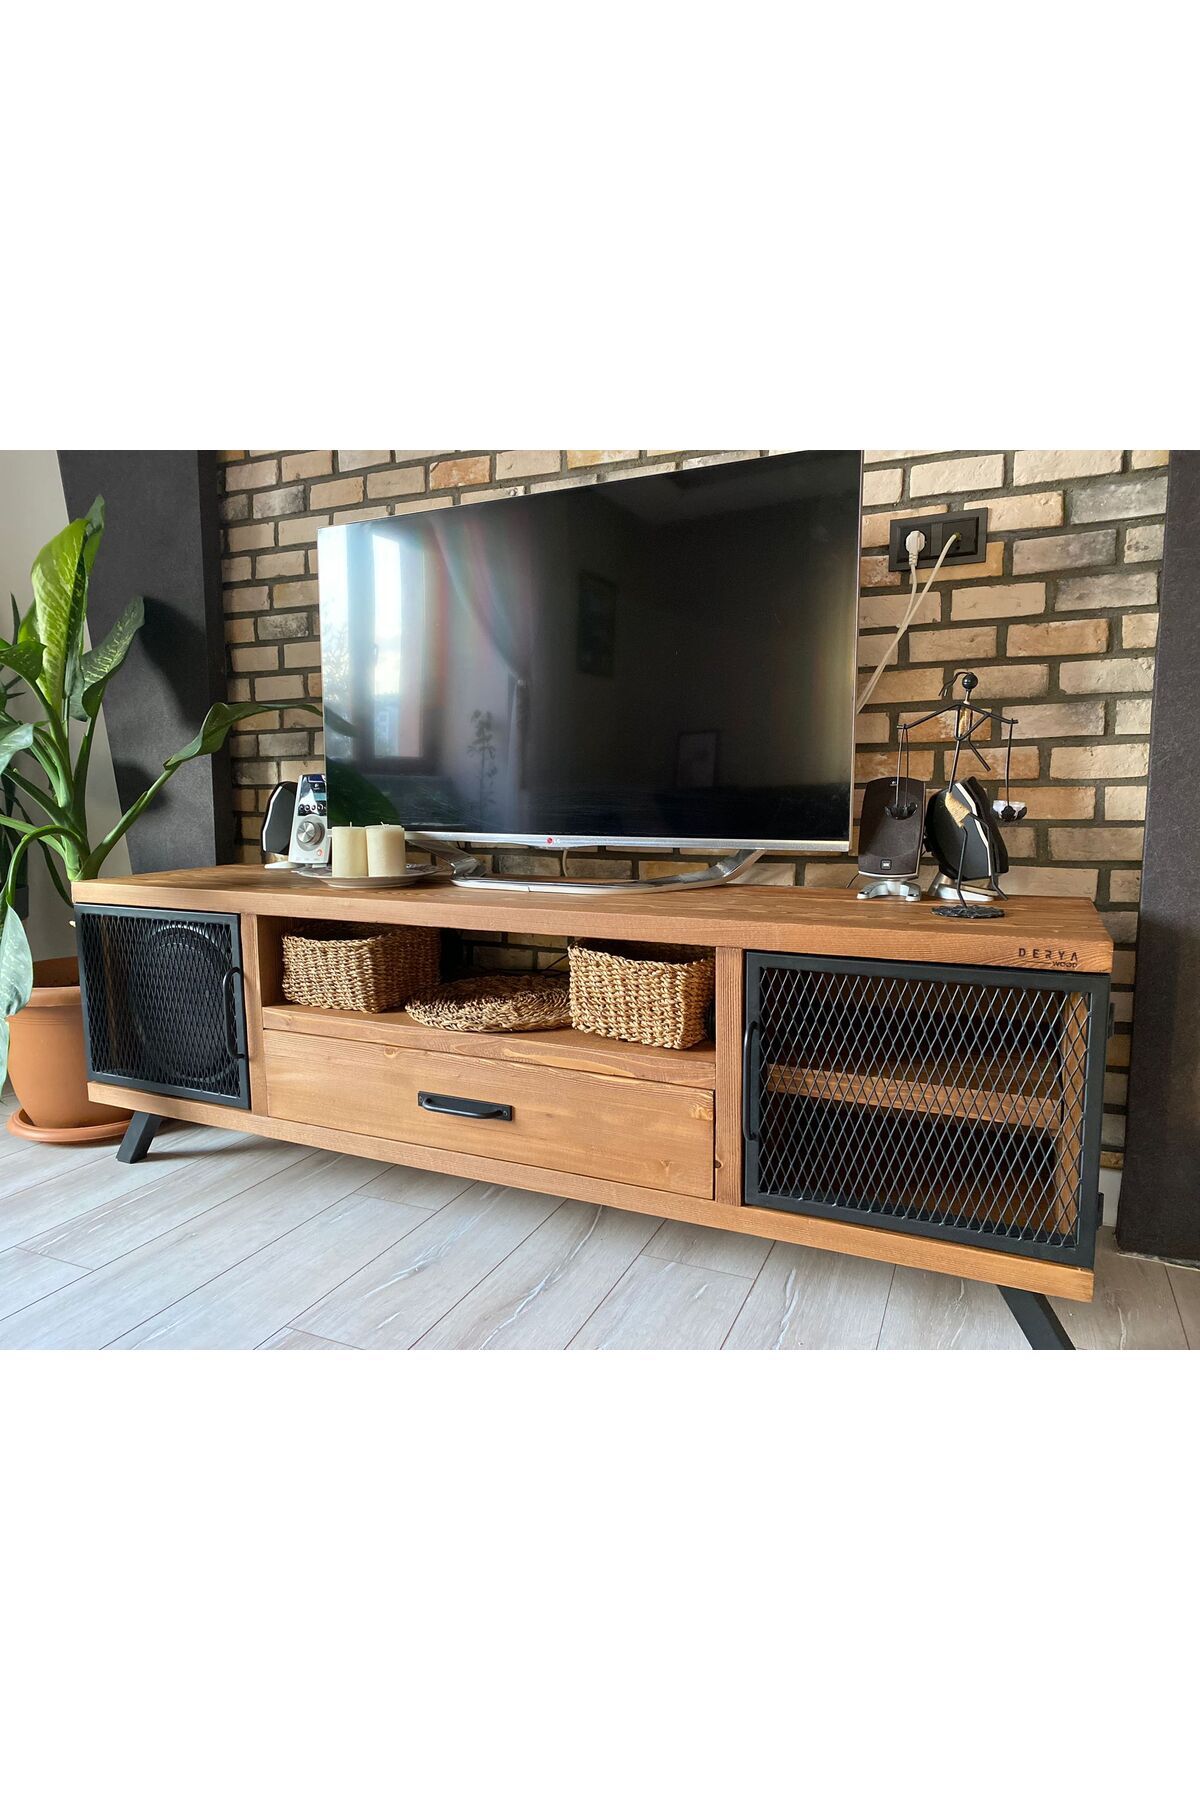 deryawood Style Masif Ahşap Demir Kapaklı Tv Ünitesi -Açık Ceviz RENK-180X43X55 cm